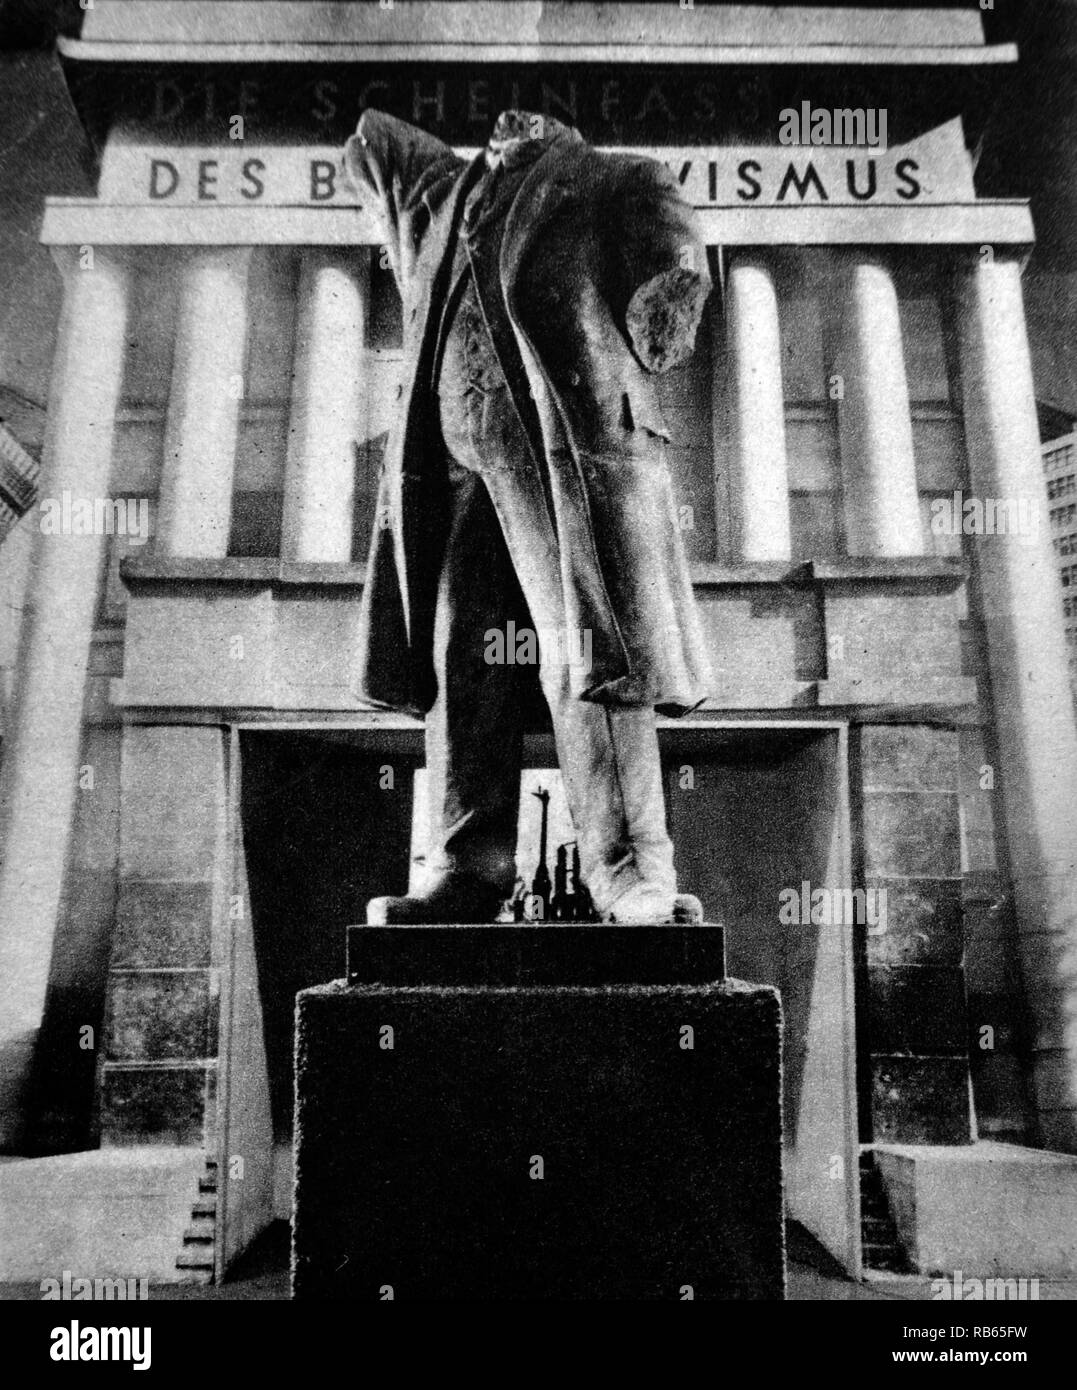 Weltkrieg zwei: eine Ausstellung, Armut und schlechte Lebensbedingungen in der Sowjetunion, die von der Regierung in Nazi inszeniert Wien belegt Stockfoto